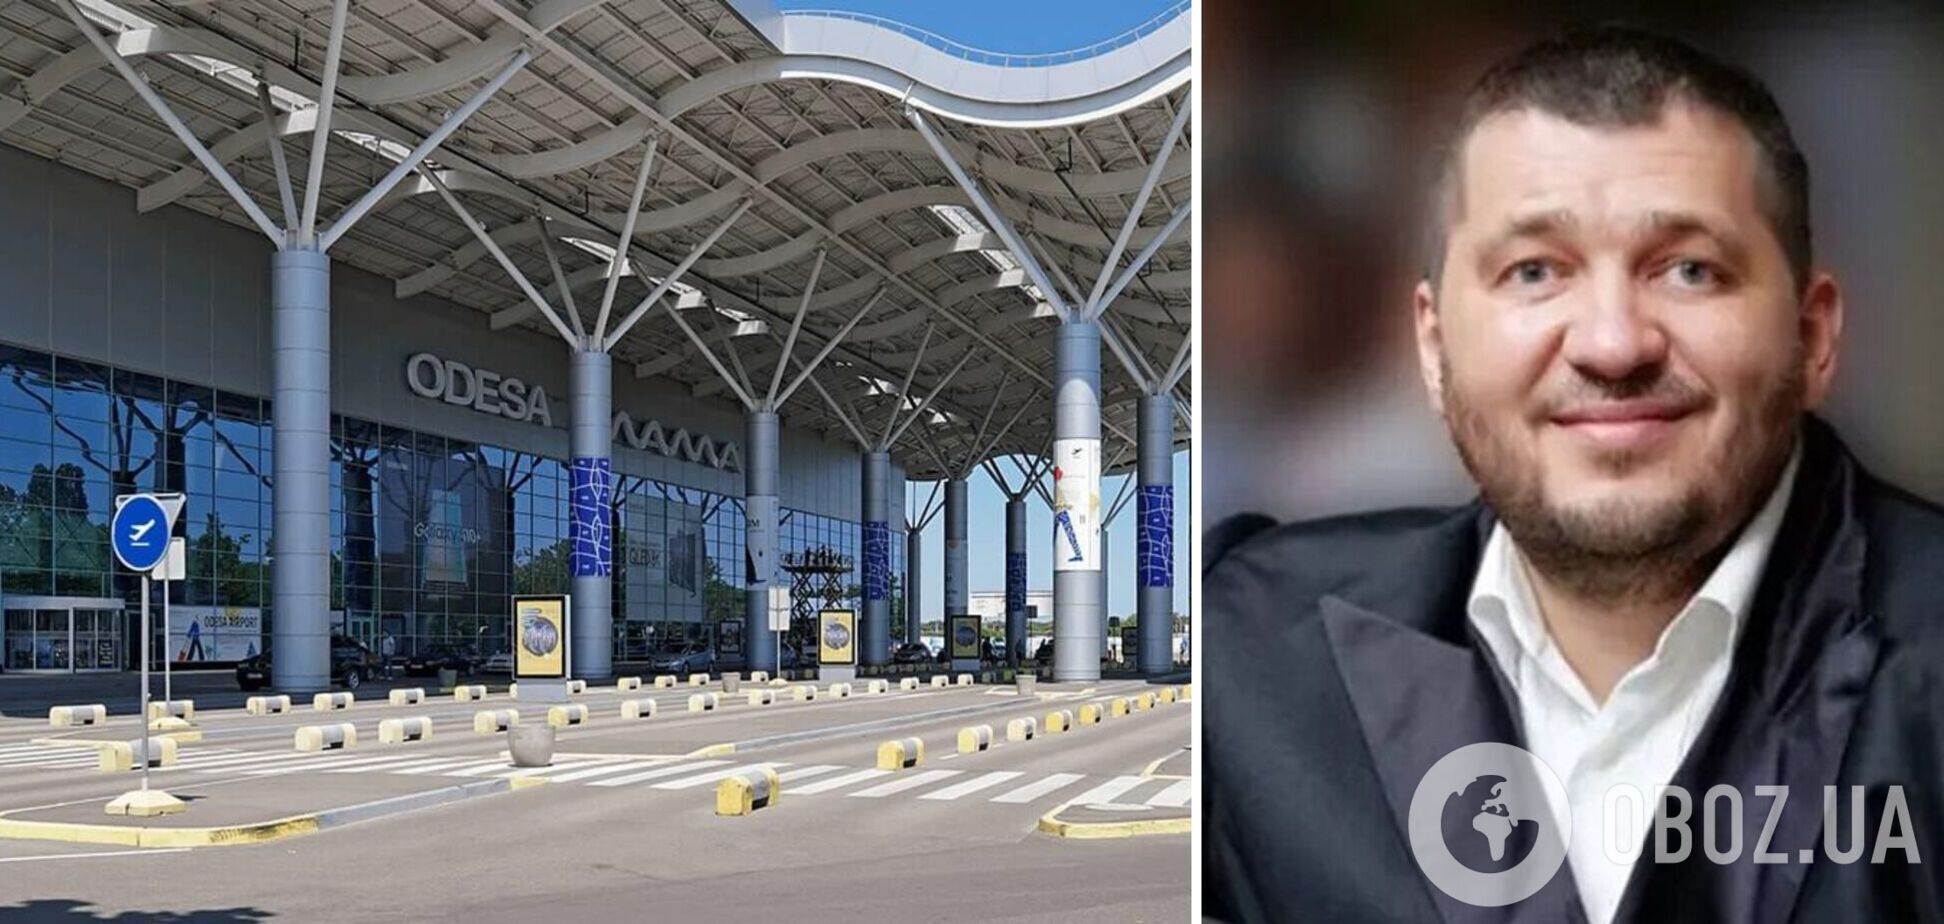 Суд избрал меру пресечения подозреваемому в схеме завладения аэропортом 'Одесса'